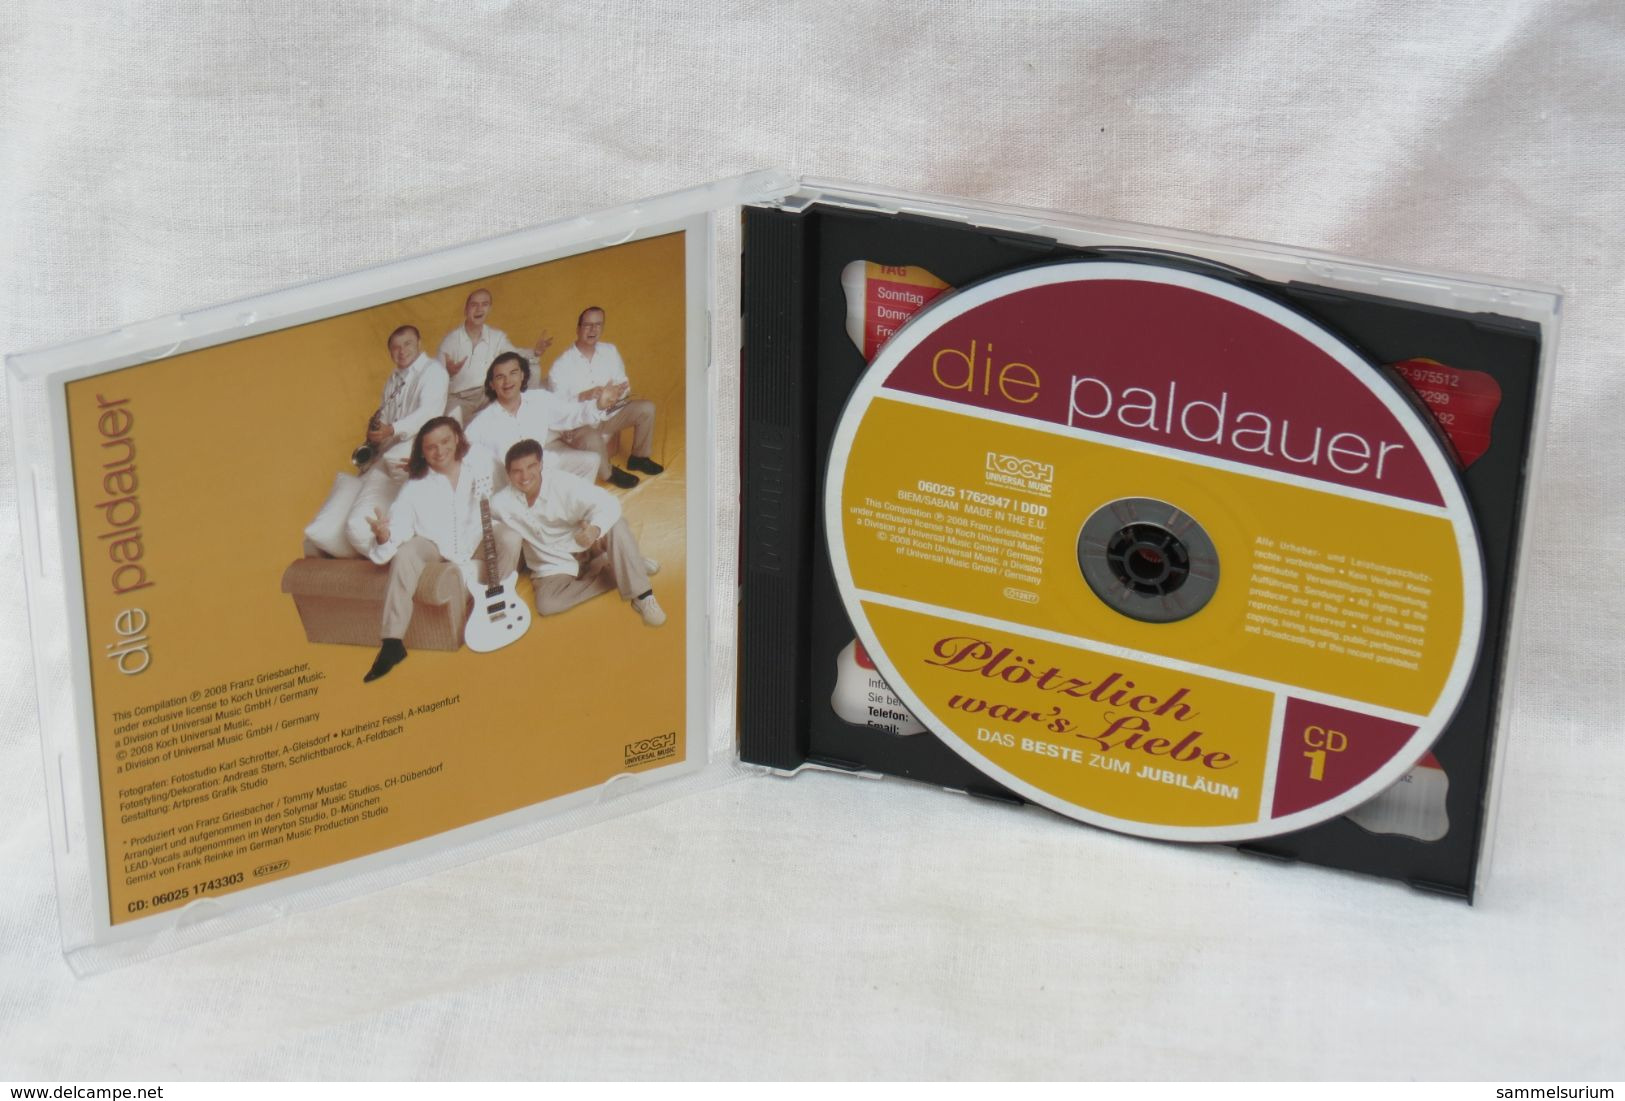 2 CDs "Die Paldauer" Plötzlich War's Liebe, Das Beste Zum Jubiläum - Other - German Music